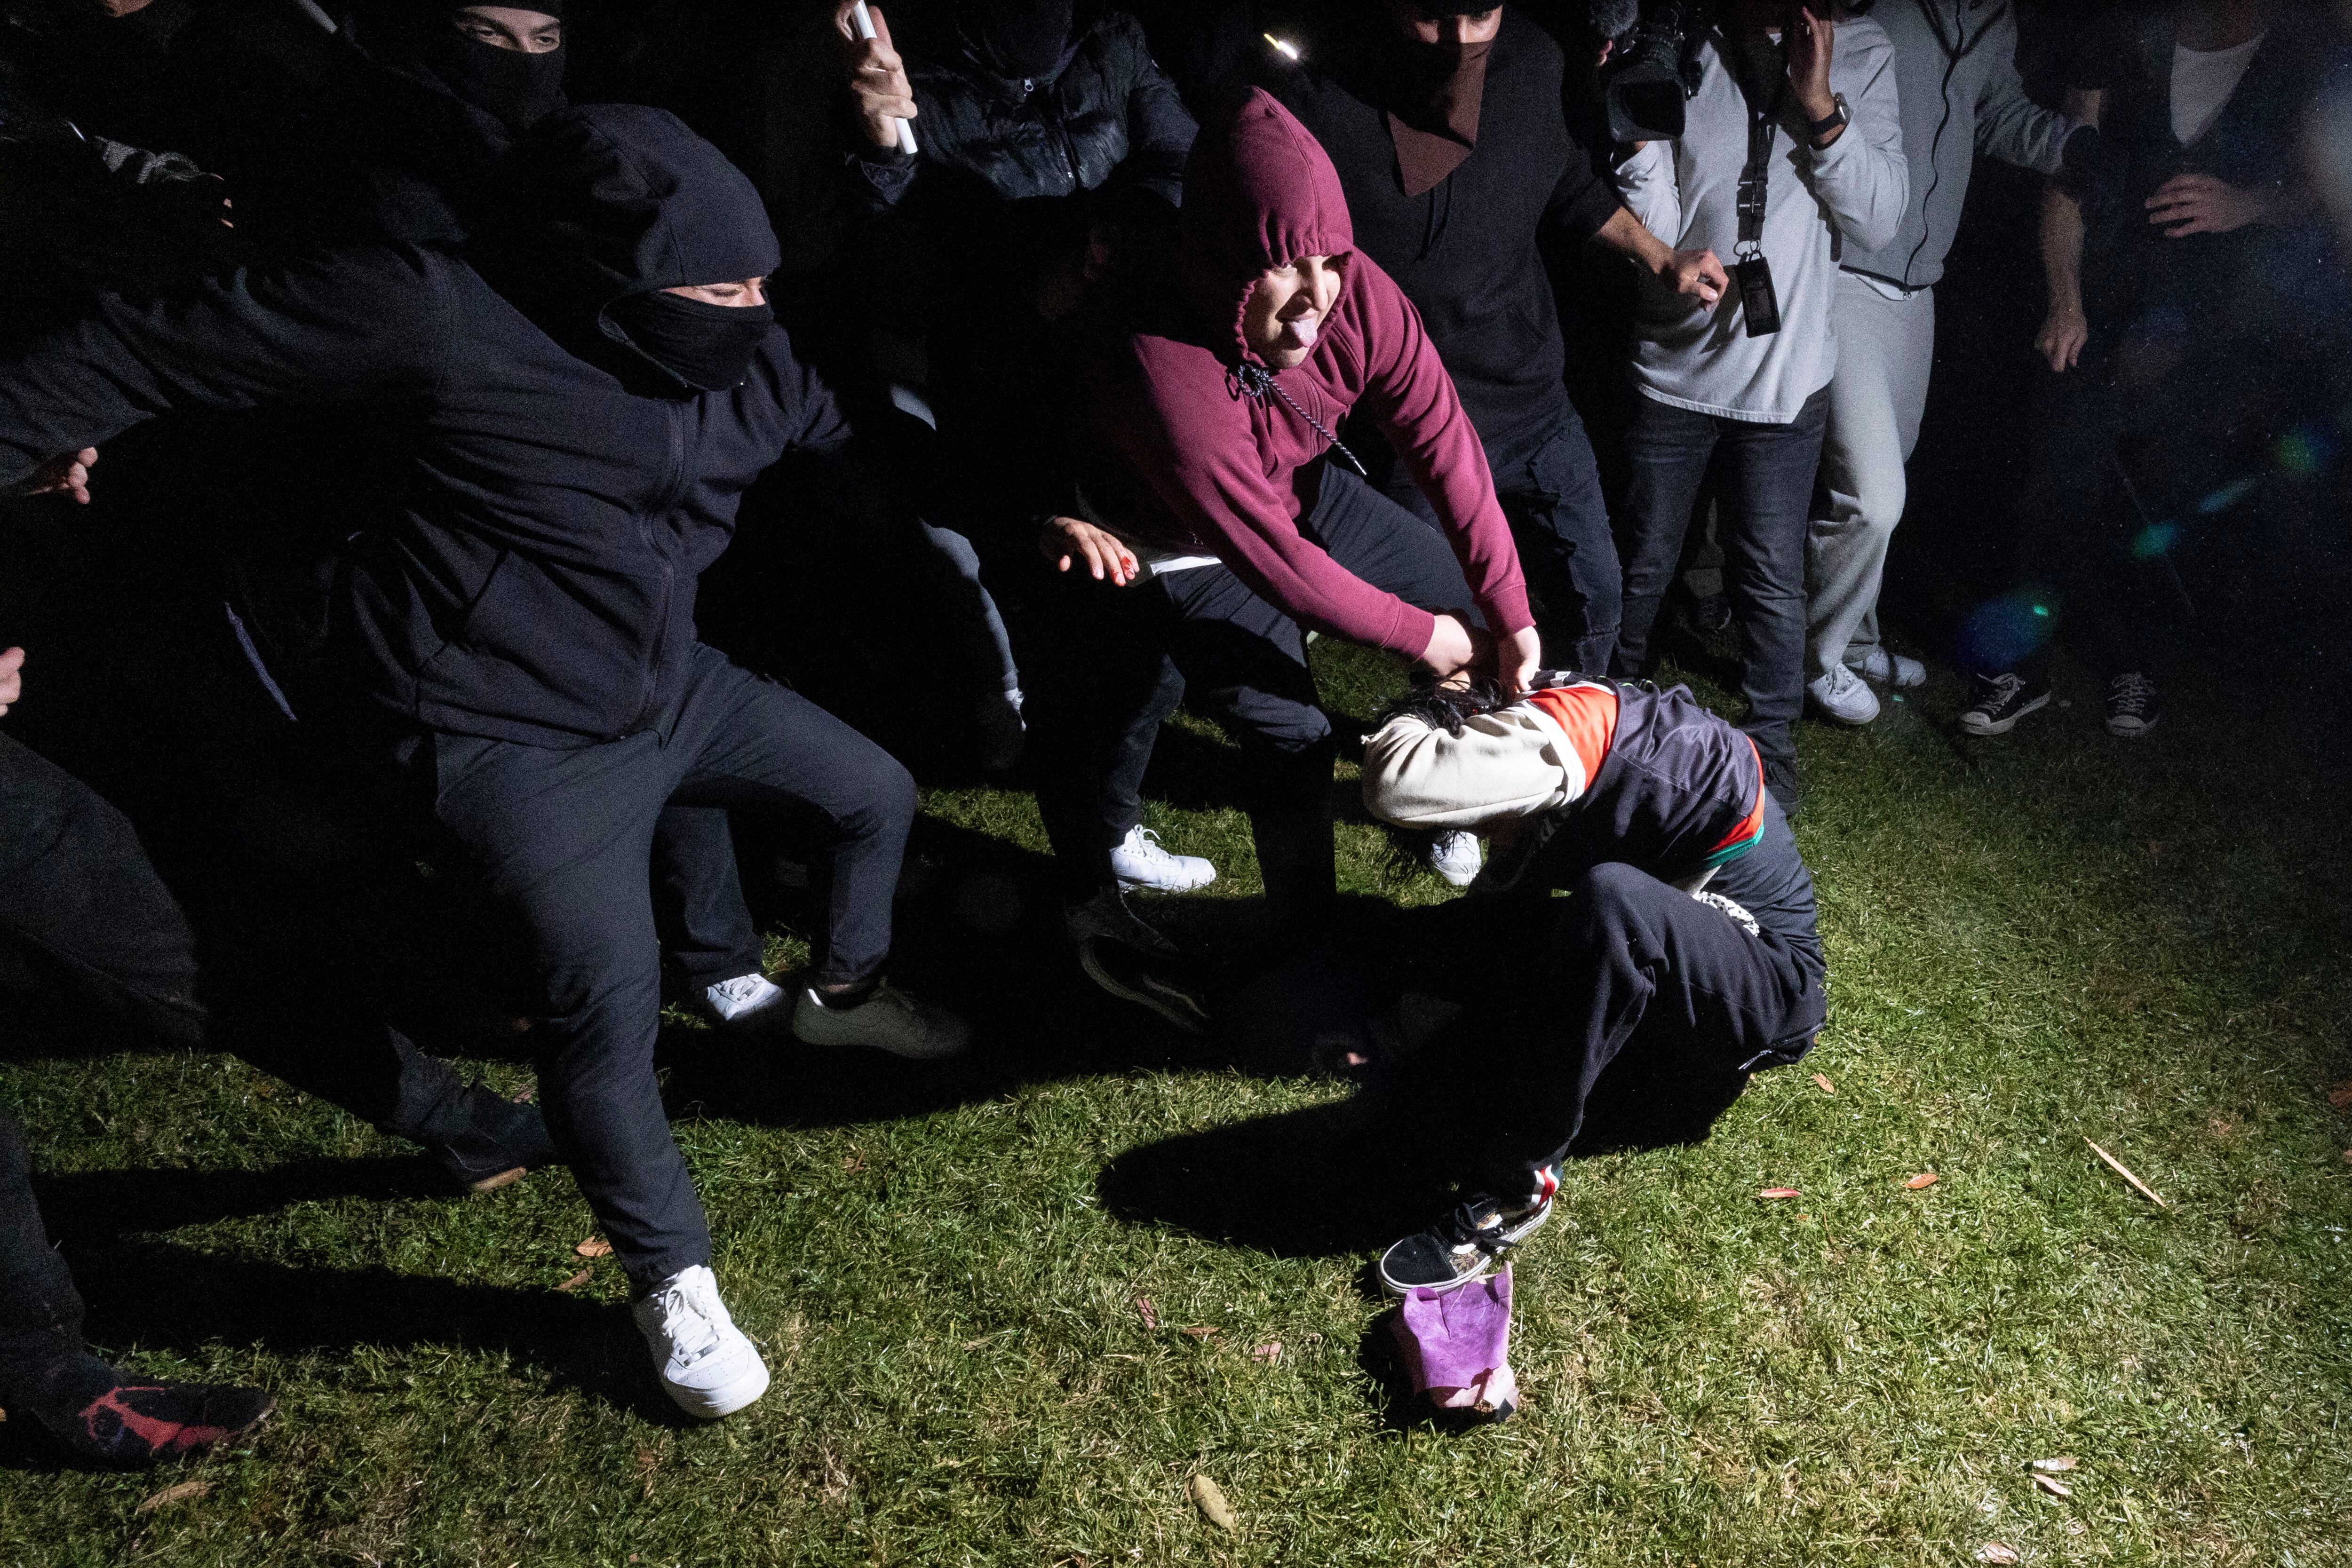 Un manifestante pro palestino es golpeado por contramanifestantes que atacan un campamento pro palestino establecido en el campus de la Universidad de California en Los Ángeles (UCLA). (Foto de ETIENNE LAURENT / AFP).